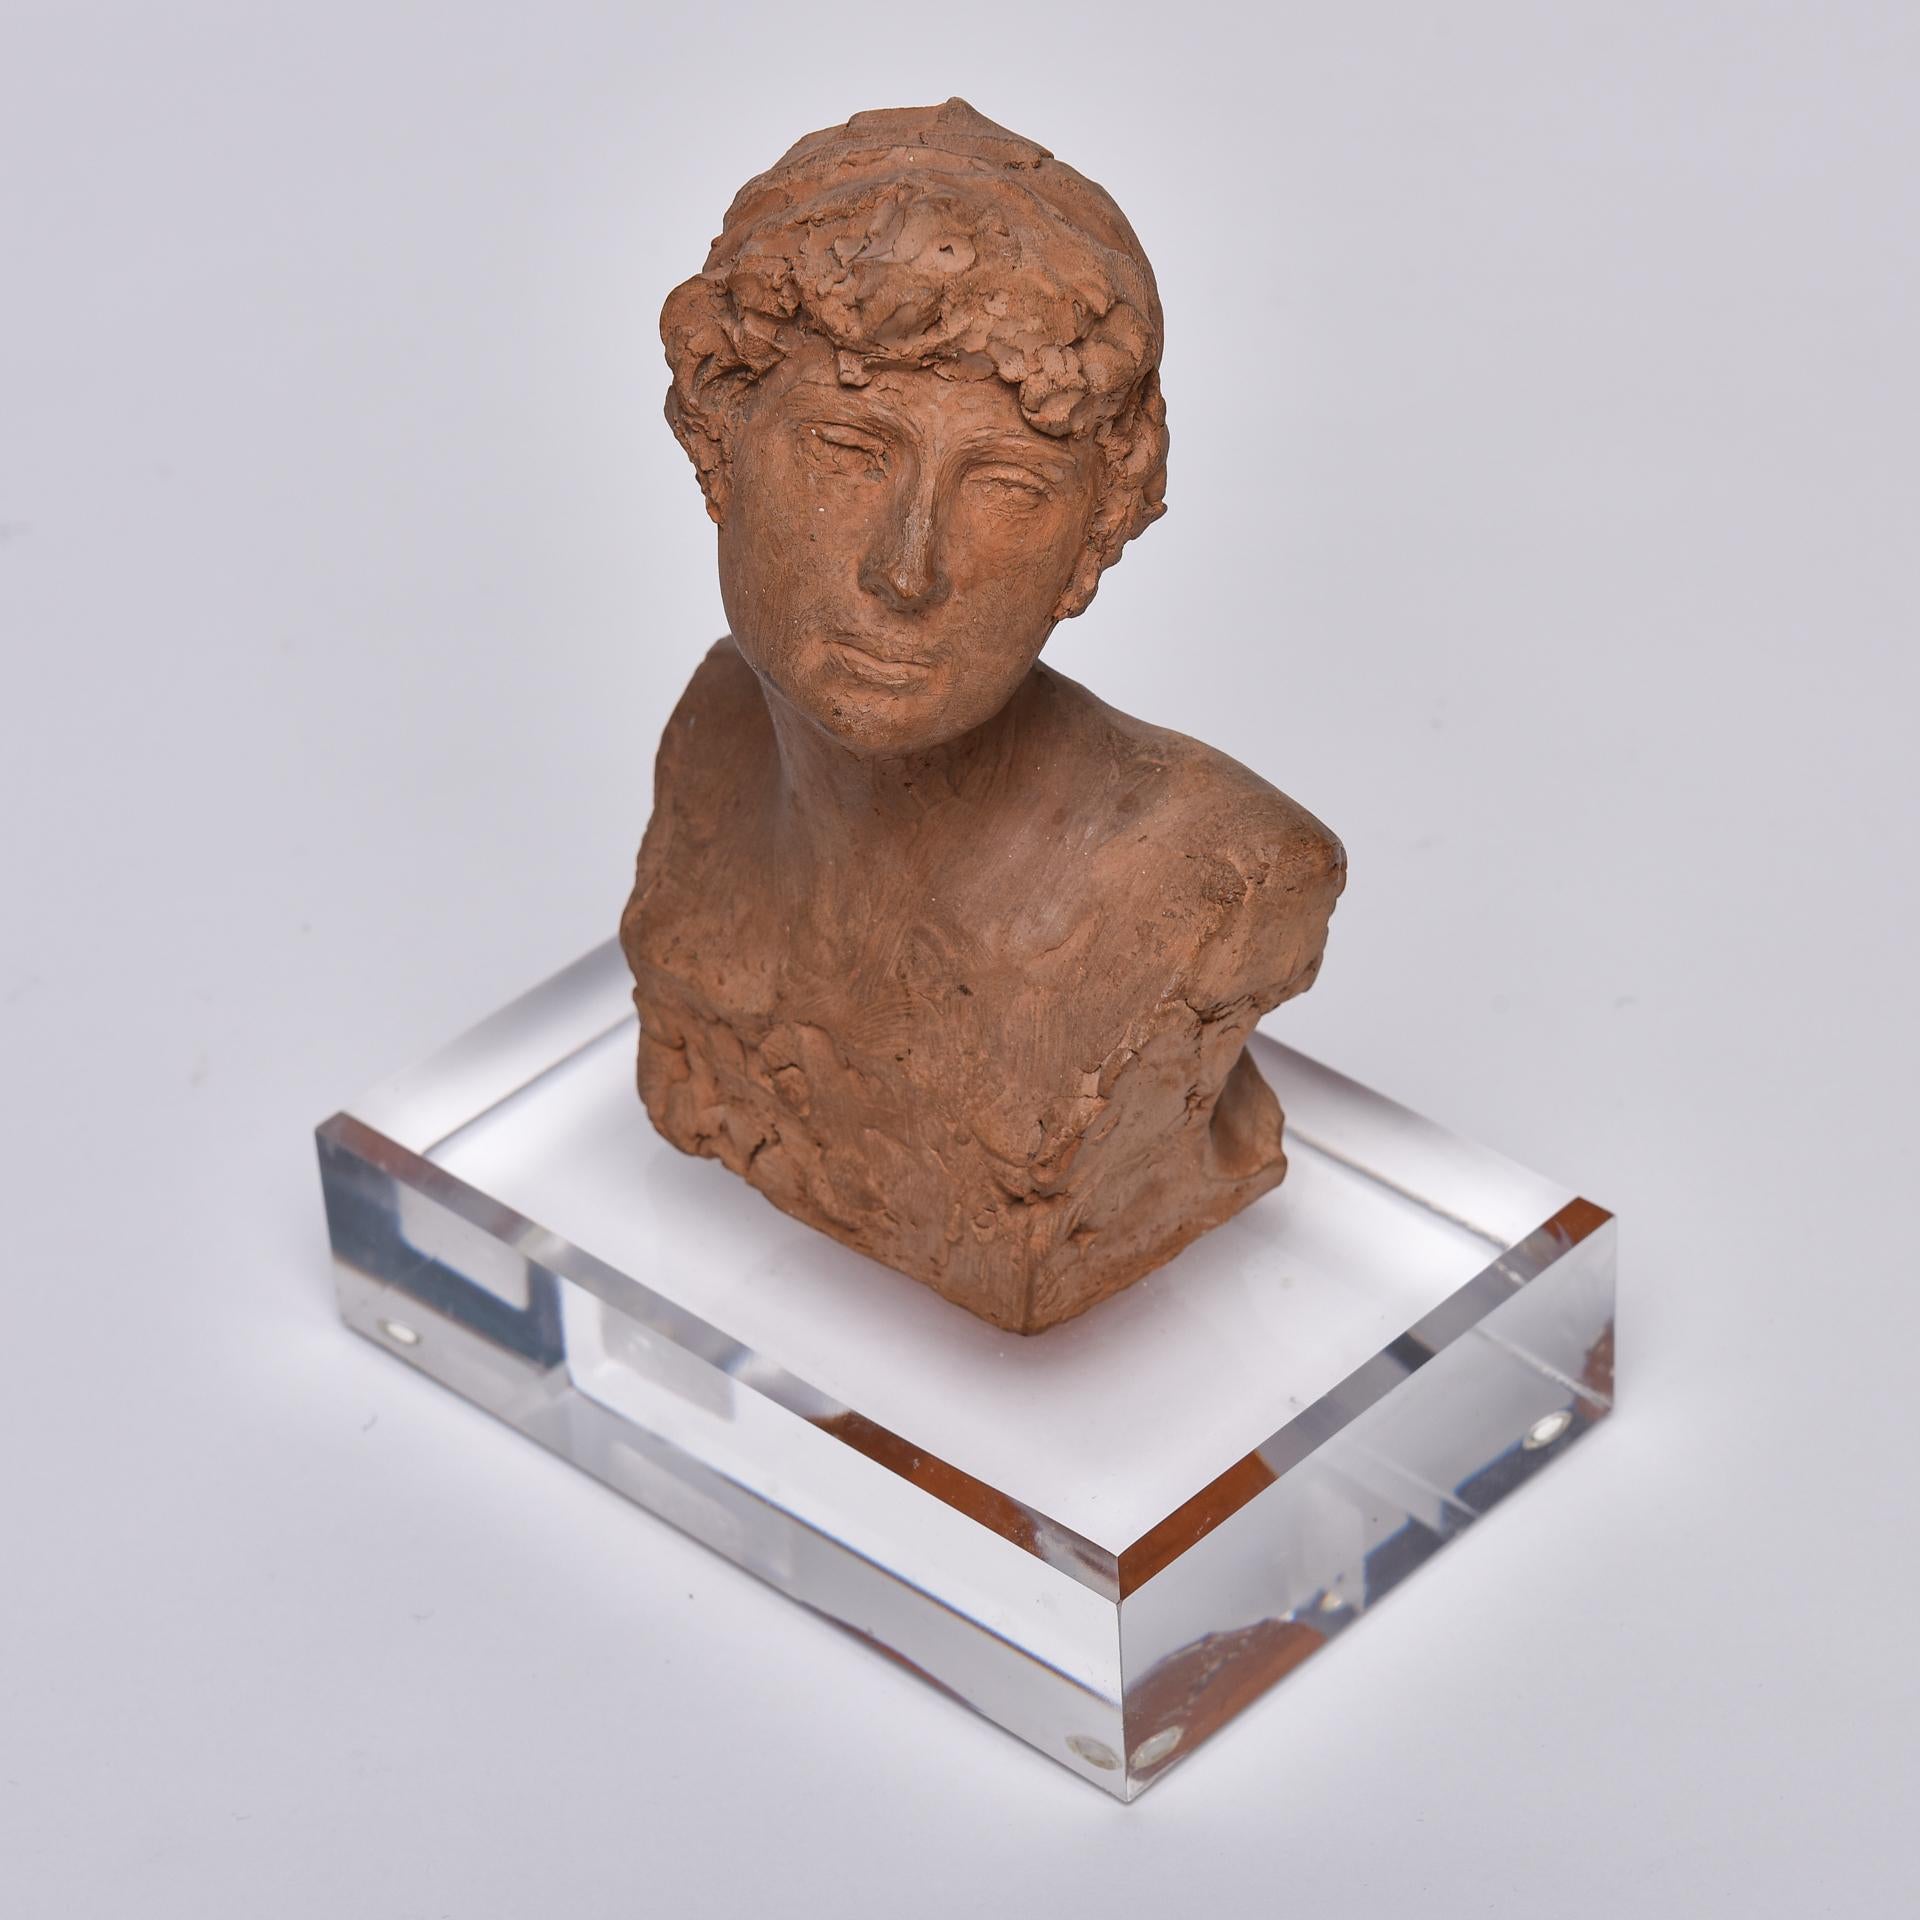 O/5804 - Petit buste féminin en terre cuite signé d'un célèbre artiste italien : Celestino Fumagalli , né à Turin en 1864, mort à Milan en 1941.
C'est un petit chef-d'œuvre, à admirer : Je l'ai placé sur un petit socle en plexi cm. 12x 8 x h.3.





